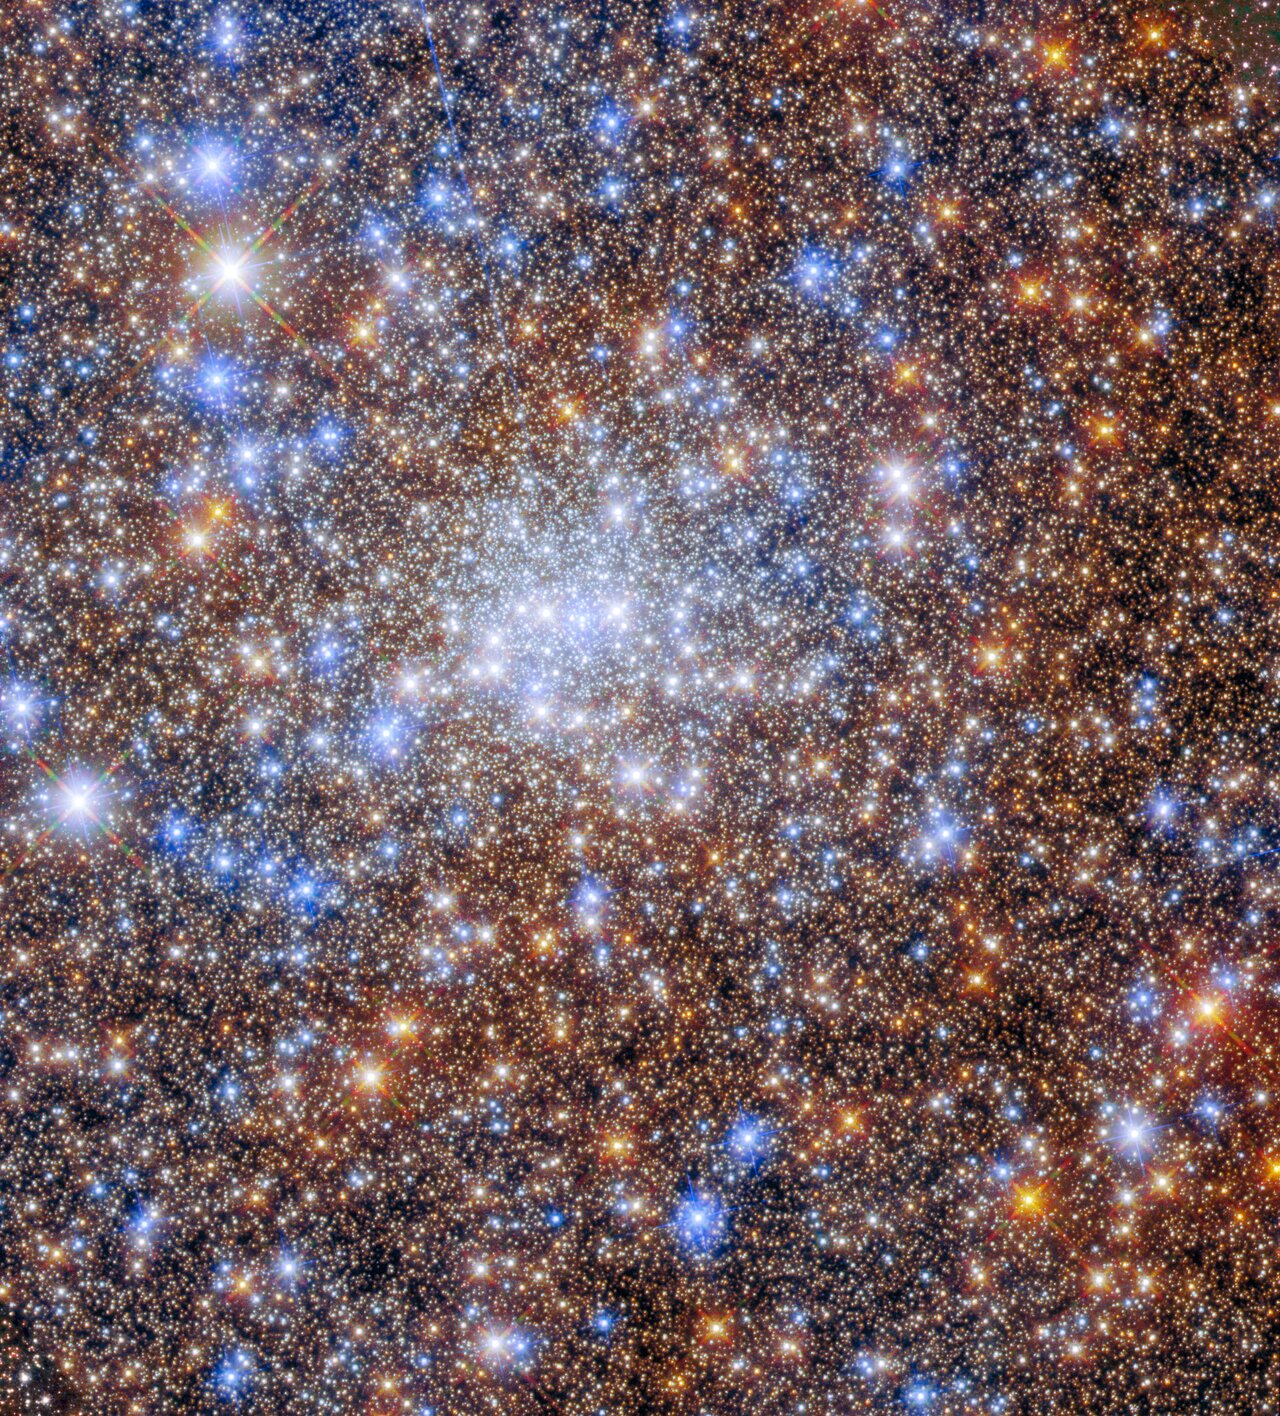 Estrellas como joyas: así brilla el cúmulo globular Terzan 4 en una impresionante imagen captada por el telescopio Hubble